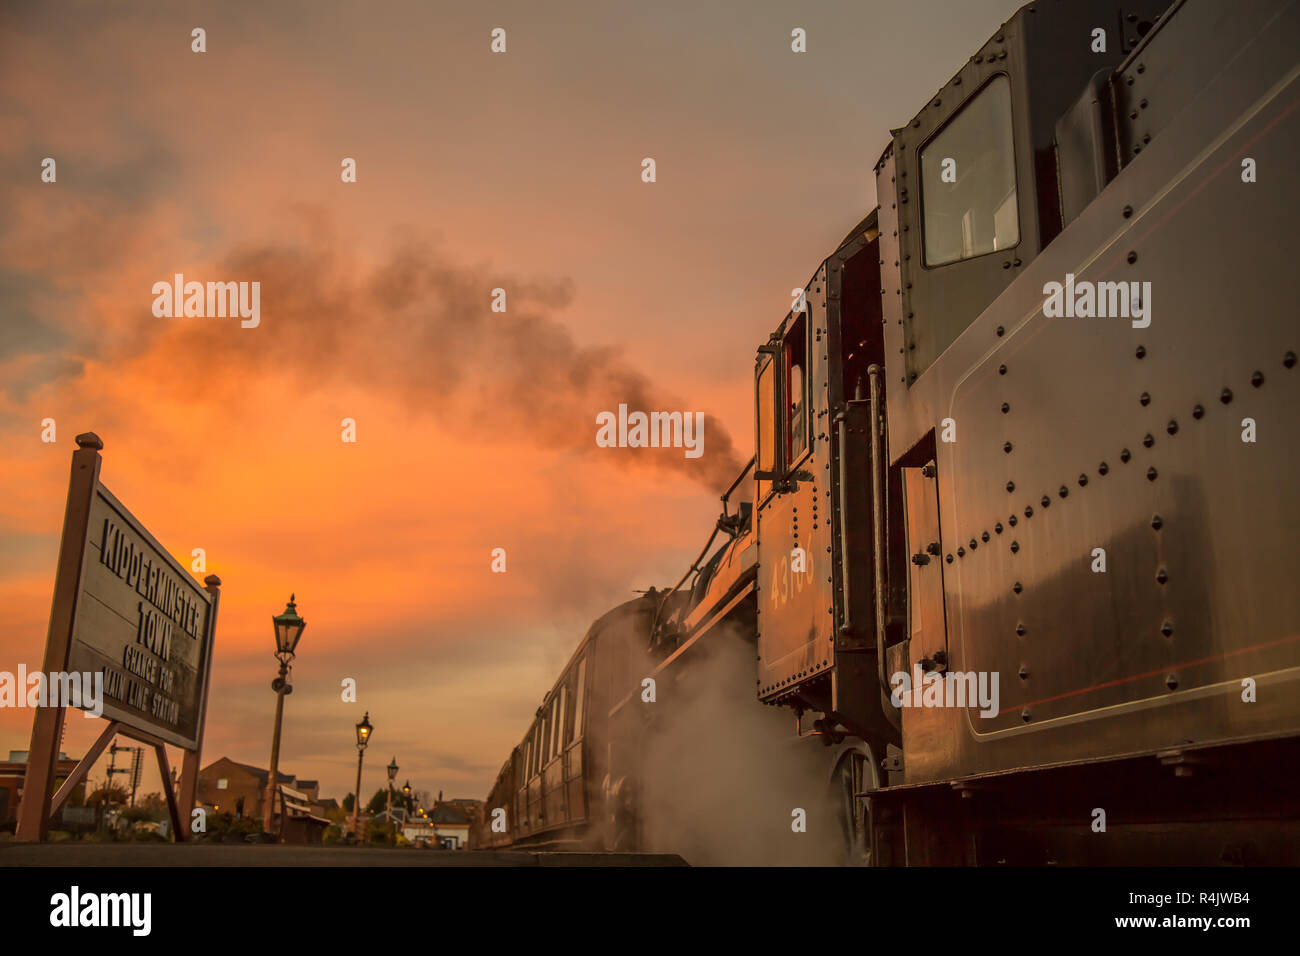 Niedriger Winkel, Seitenansicht Nahaufnahme des alten britischen Dampfzugs am Bahnsteig in leerem historischen Bahnhof am Ende des Tages mit glühendem Sonnenuntergang Abendhimmel. Stockfoto